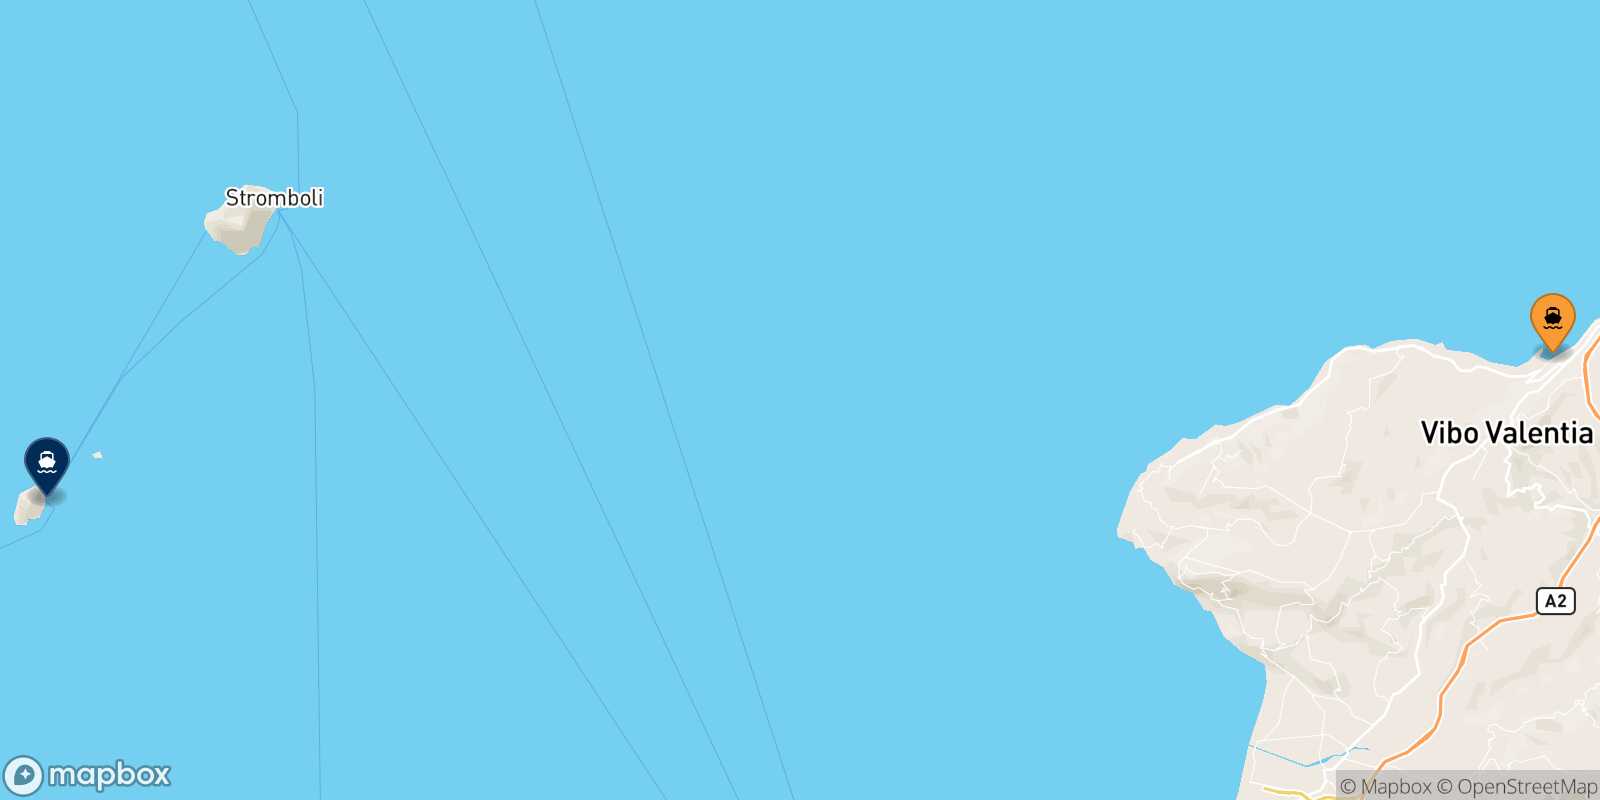 Mapa de la ruta Vibo Valentia Panarea